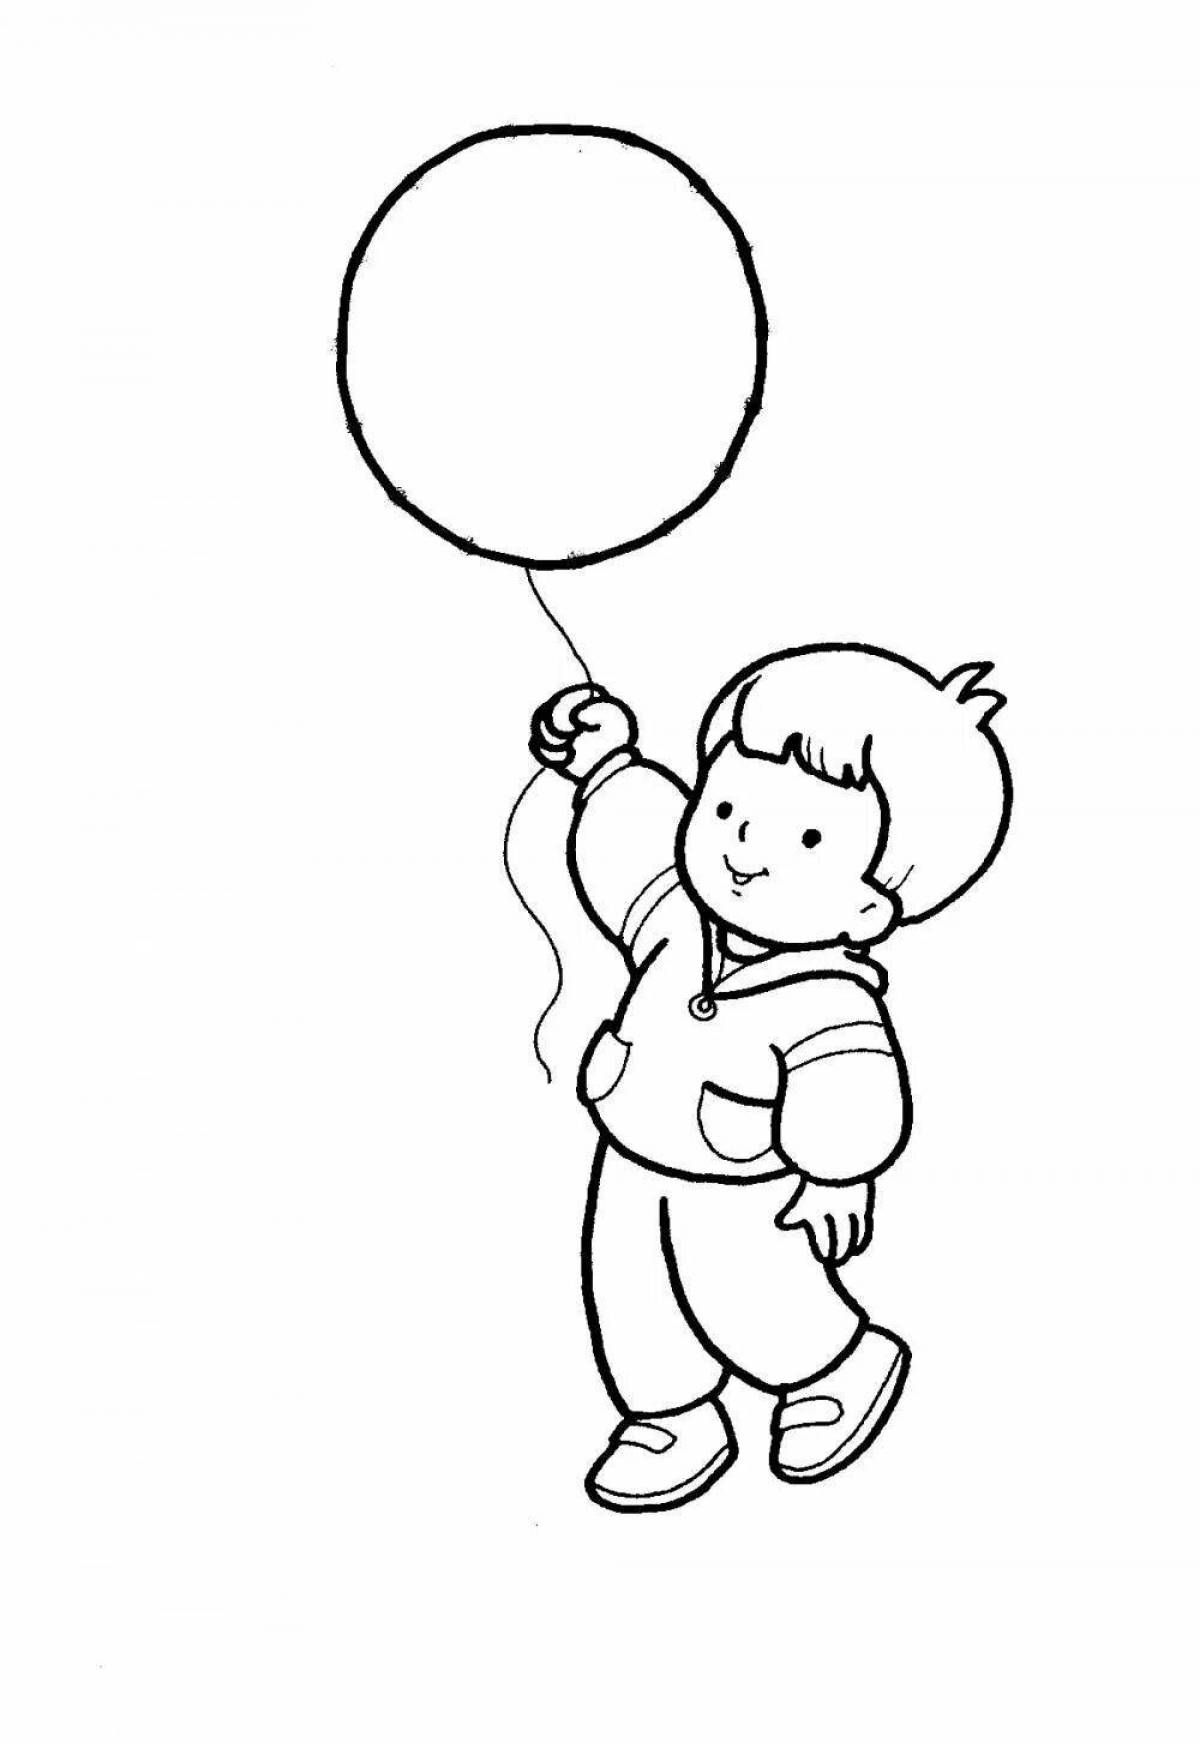 Joyful coloring girl with balloons